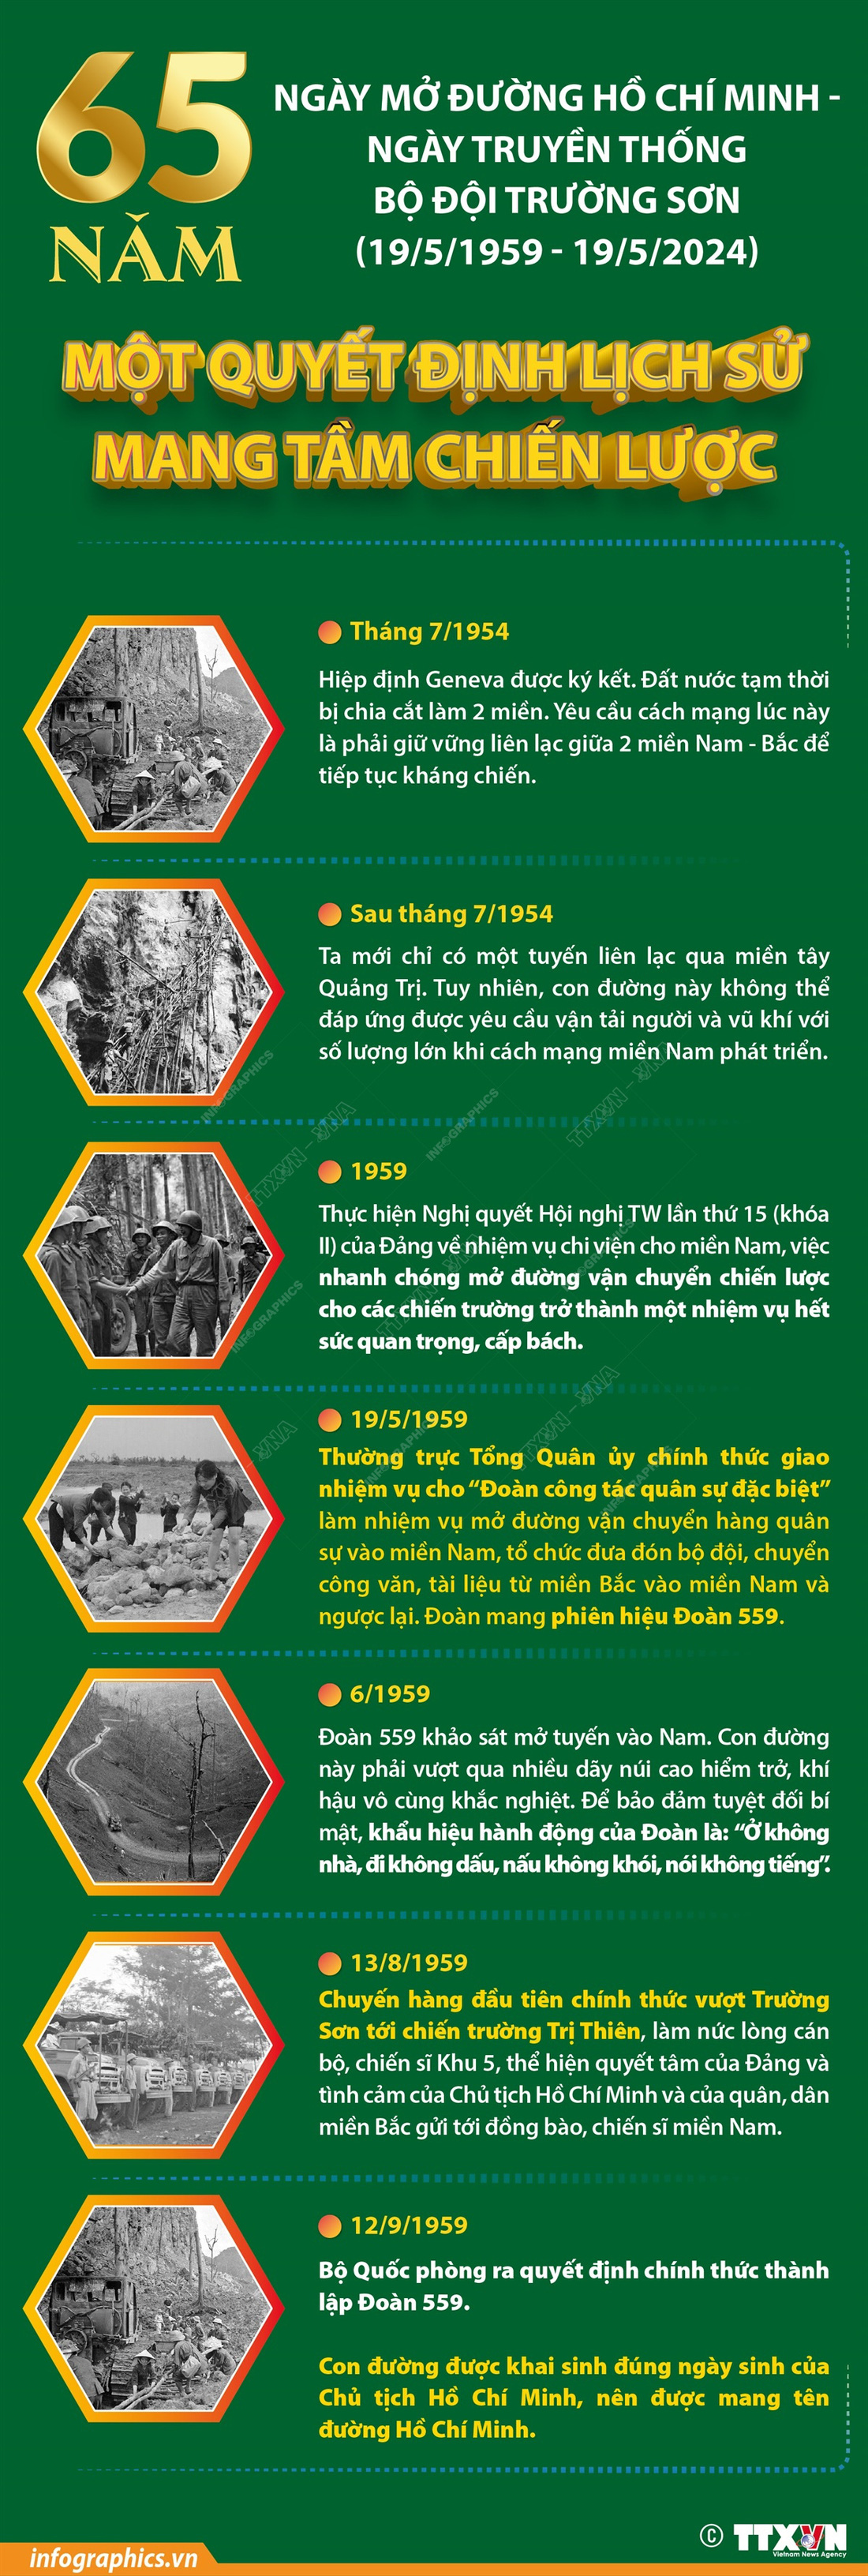 Mở đường Hồ Chí Minh: Một quyết định lịch sử mang tầm chiến lược